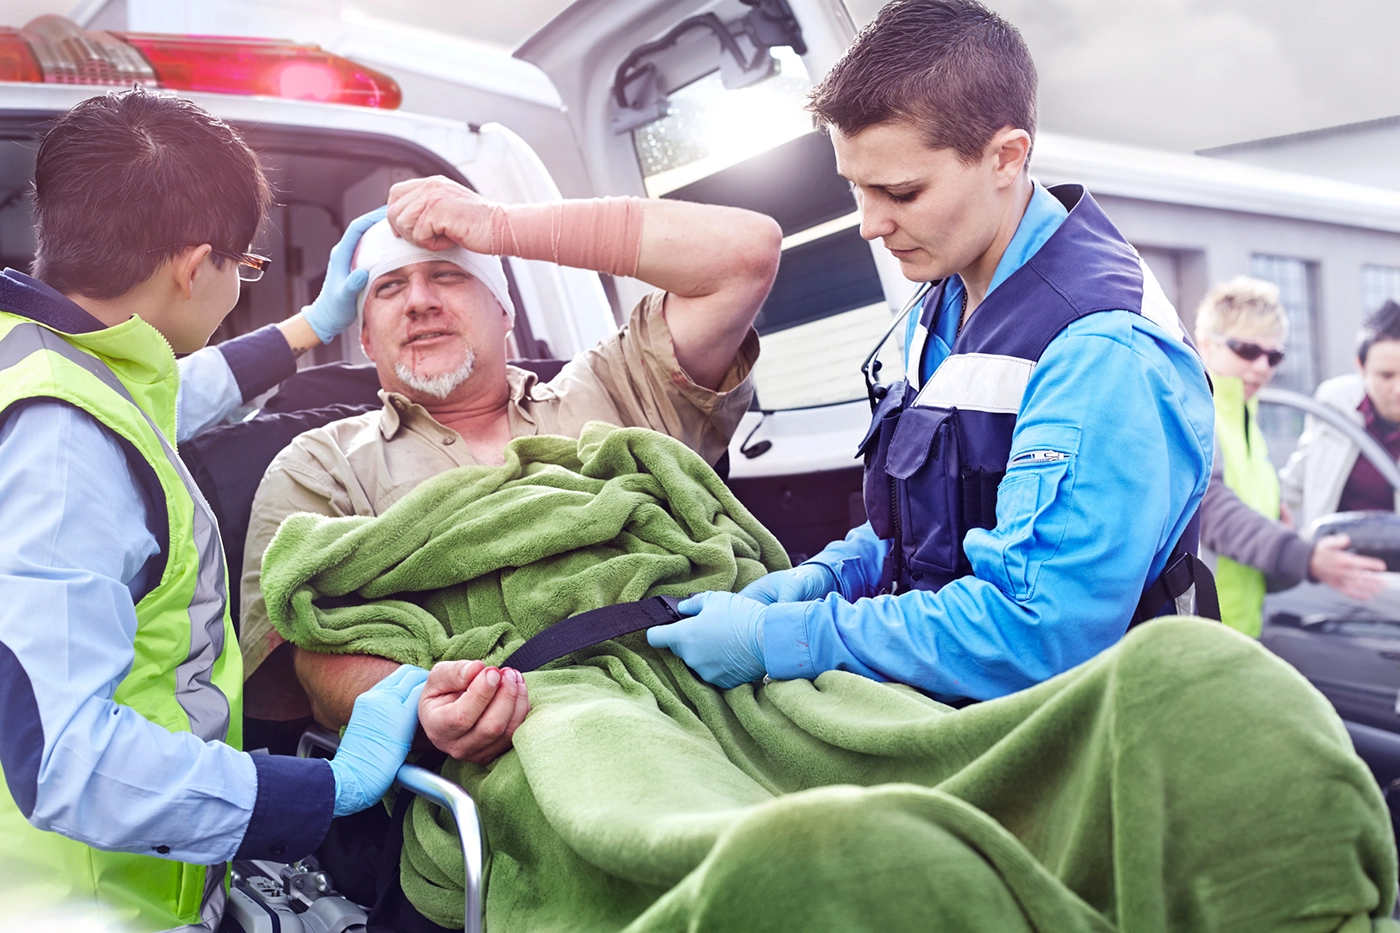 Paramedic Saved a Hiker's Life